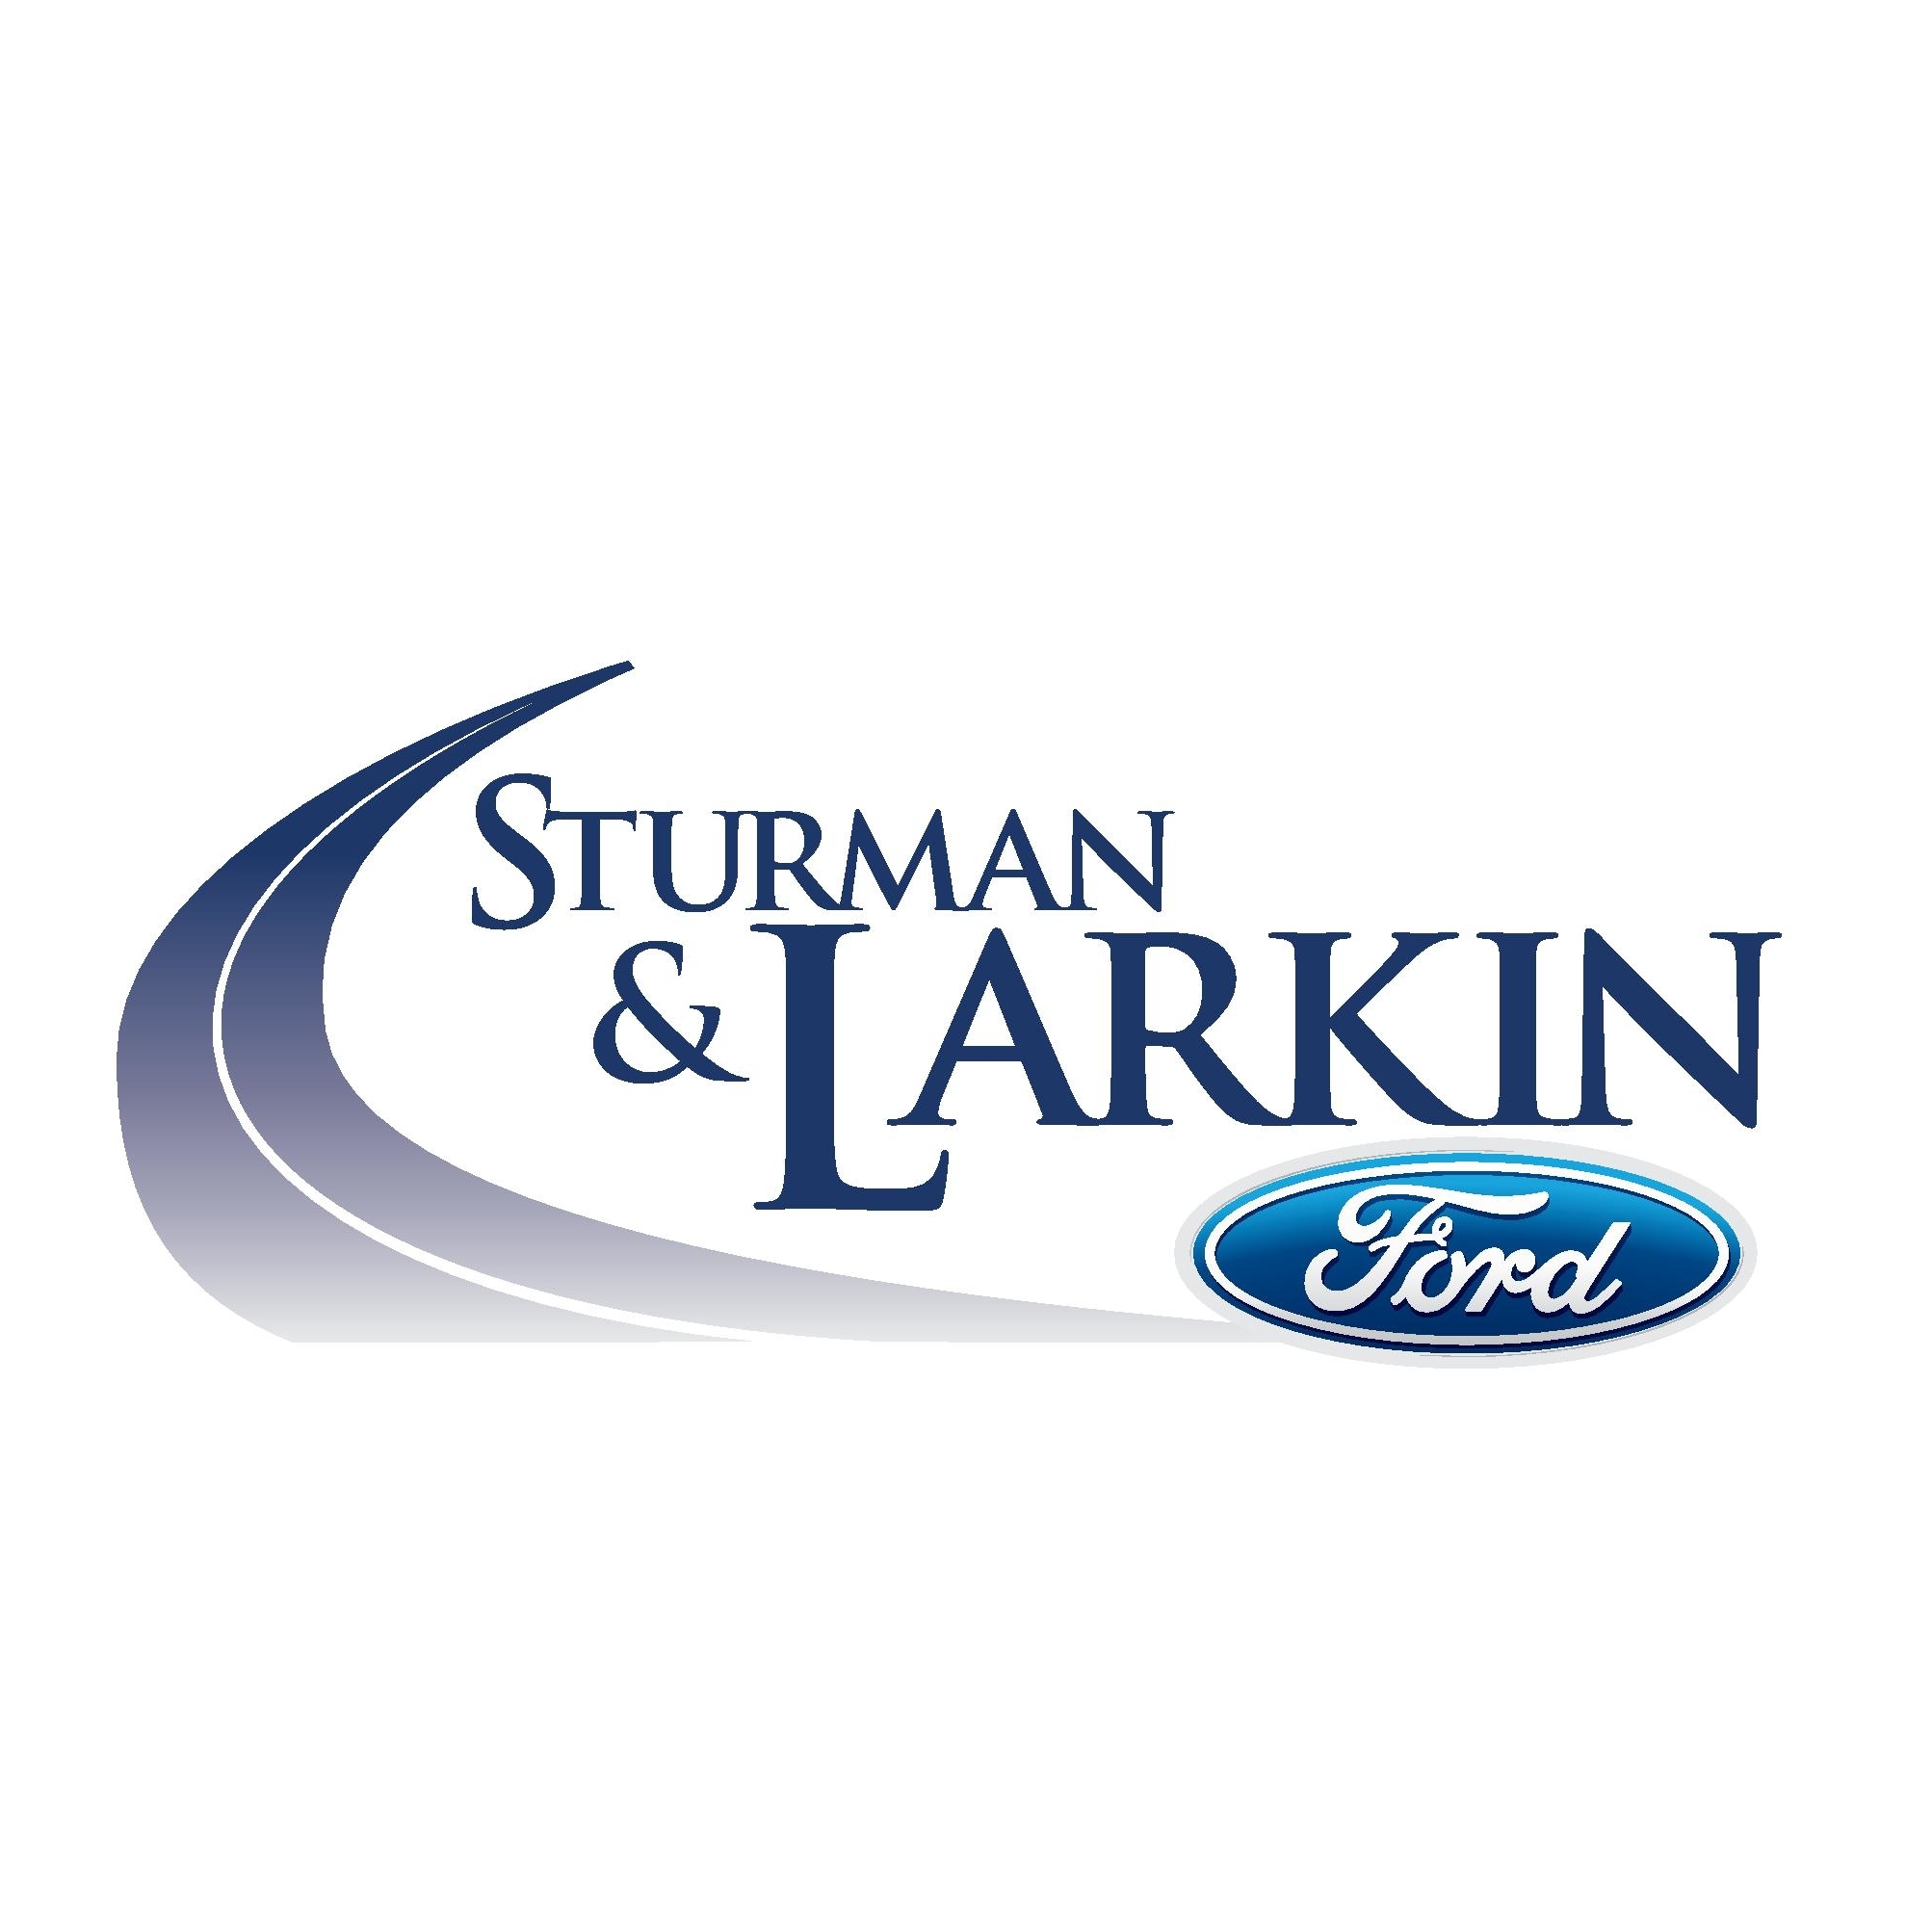 Sturman and Larkin Ford